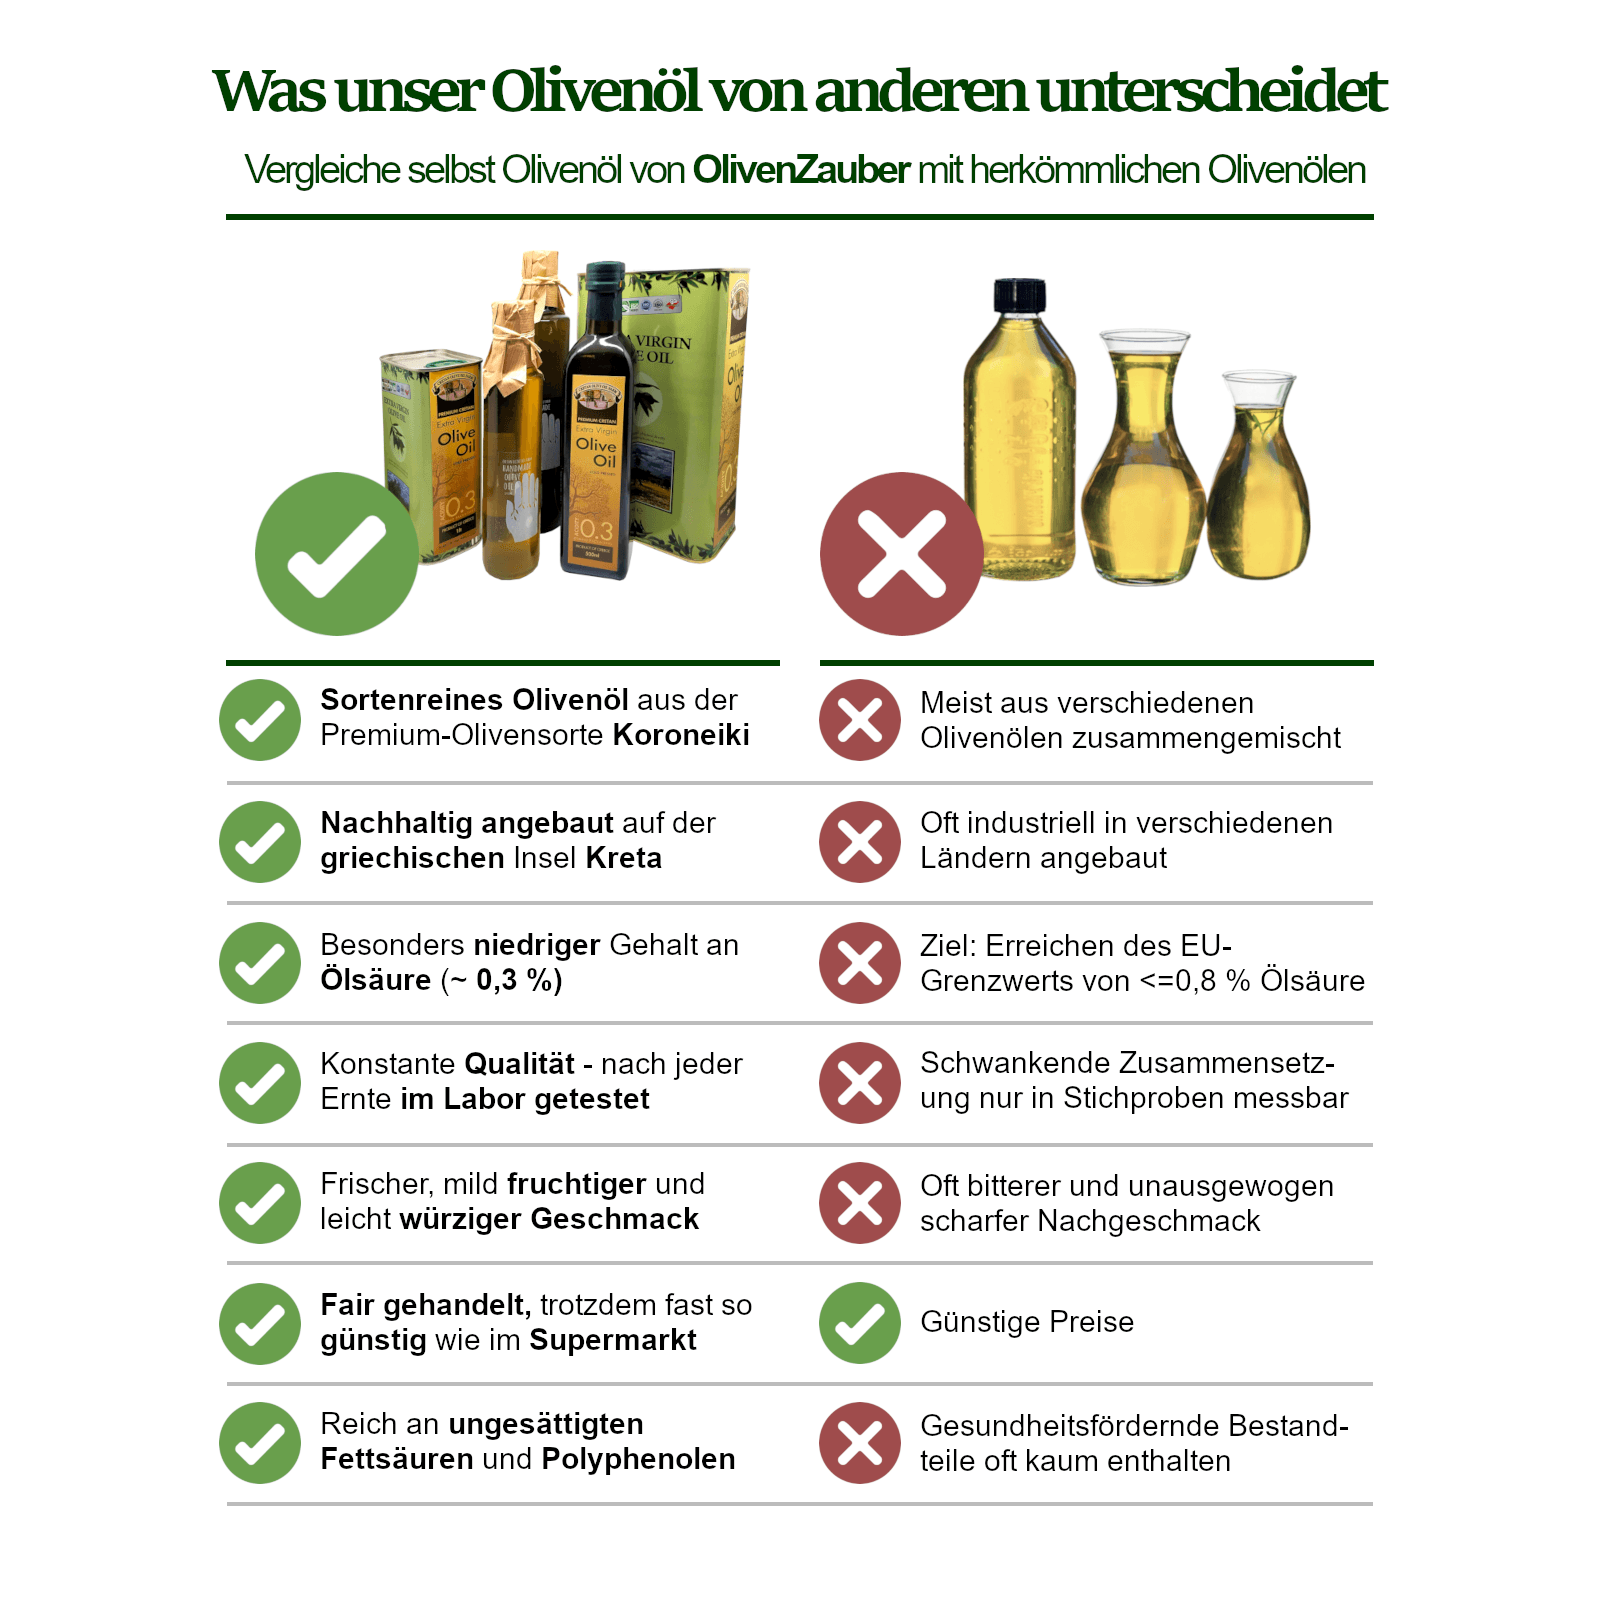 EU-Kommission zieht Verbot von Olivenöl-Karaffen nach Protesten